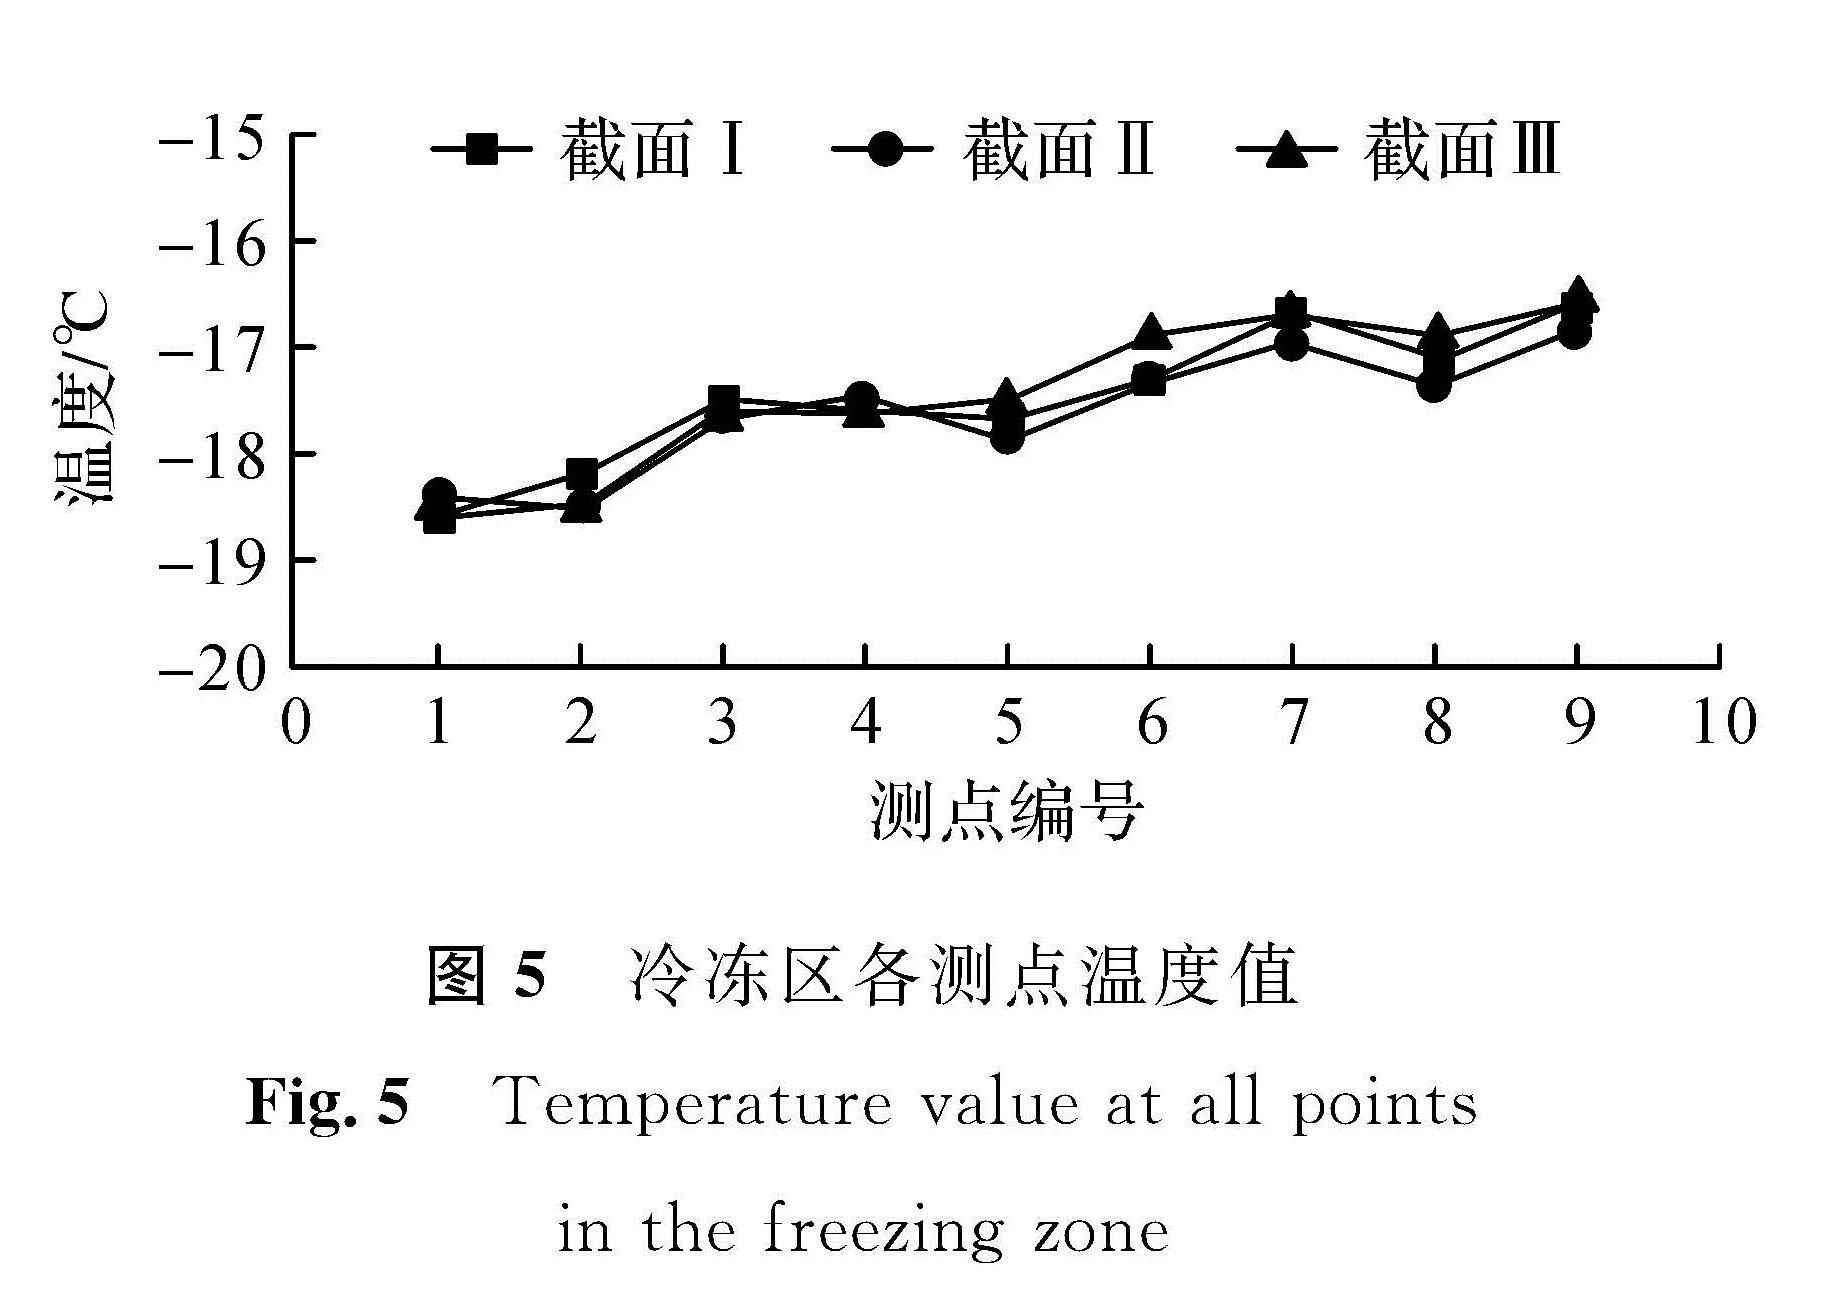 图5 冷冻区各测点温度值<br/>Fig.5 Temperature value at all points in the freezing zone